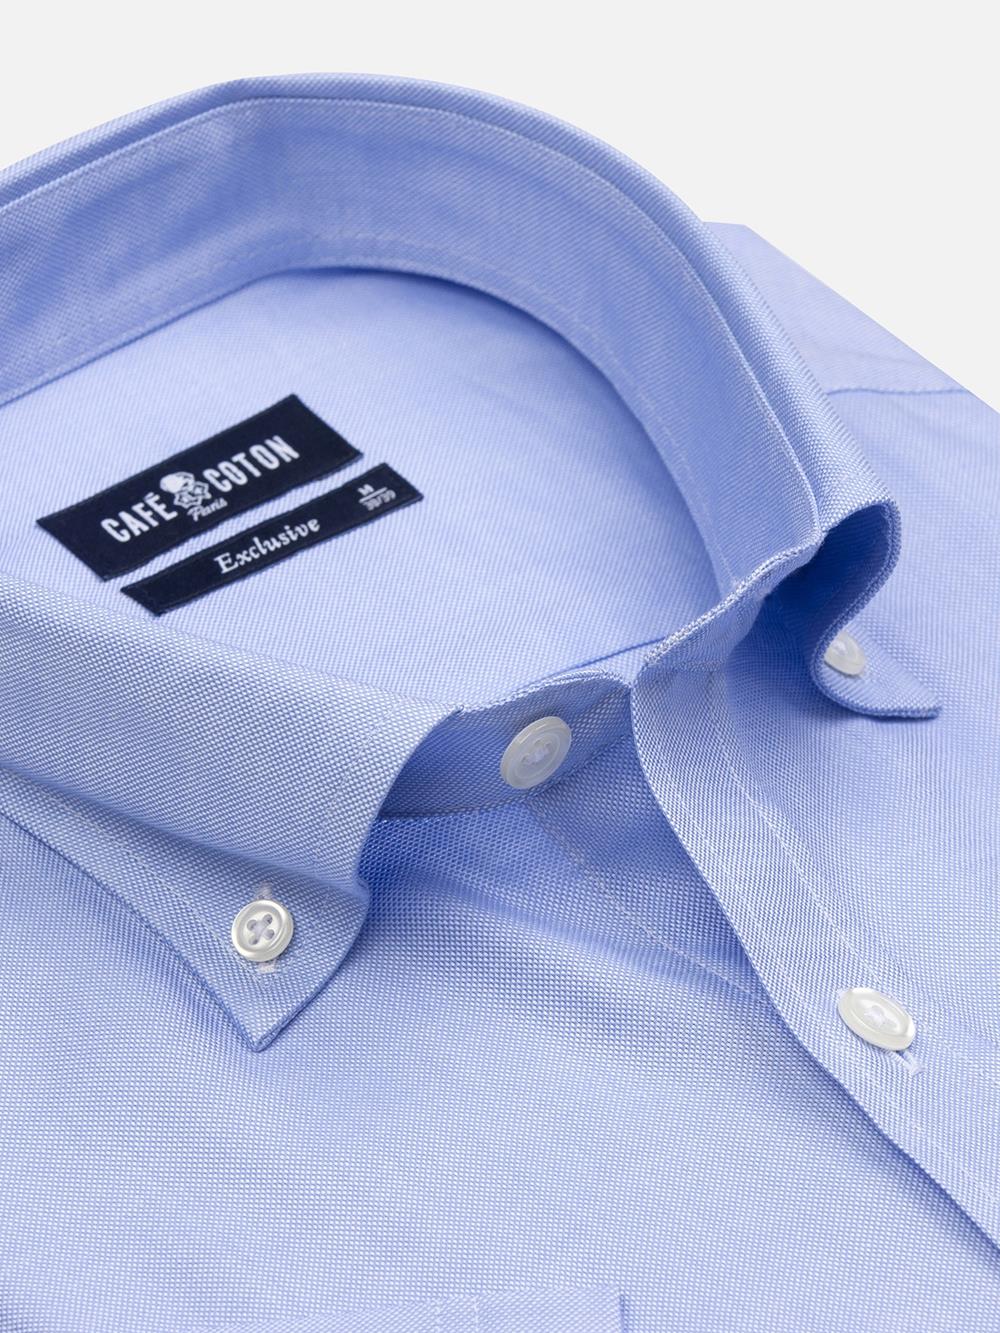 Hemels oxford overhemd - Button-down kraag